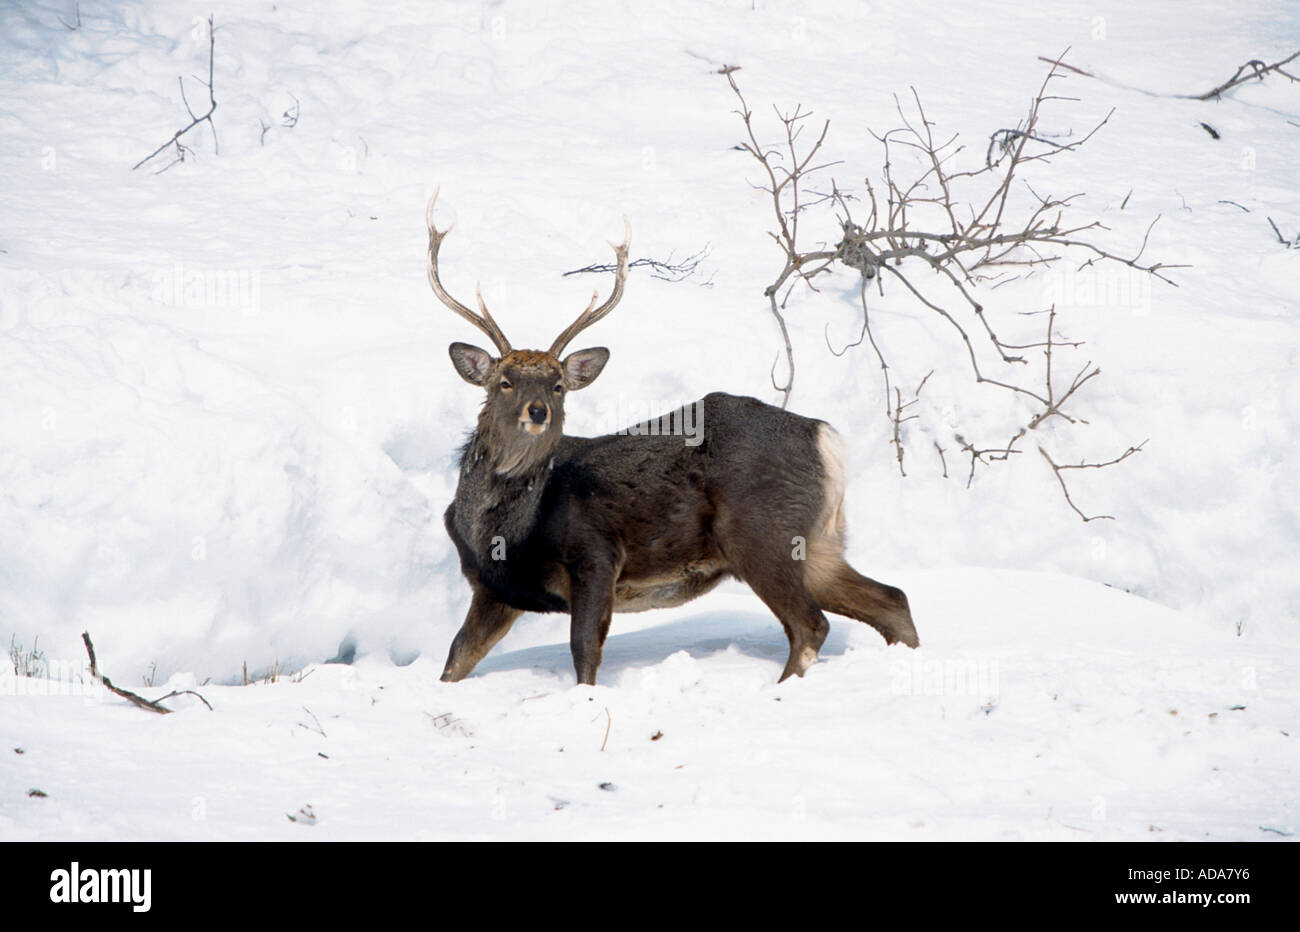 sika deer (Cervus nippon), standin in snow, Japan, Hokkaido Stock Photo